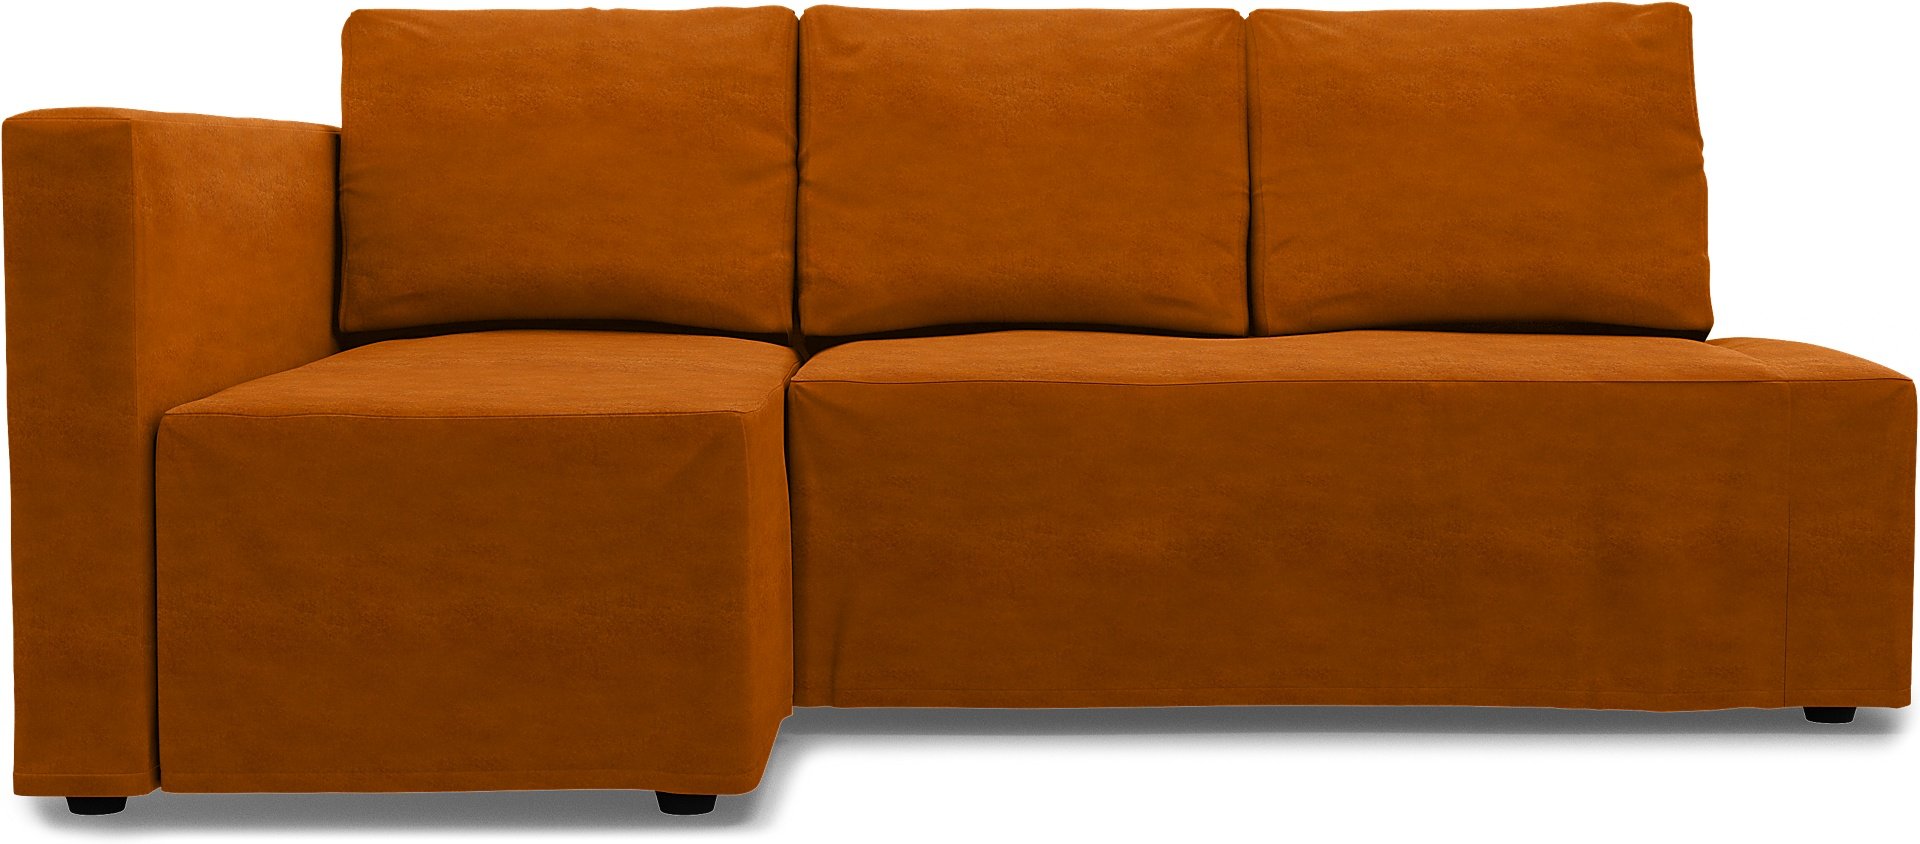 IKEA - Friheten Sofa Bed with Left Chaise Cover, Cognac, Velvet - Bemz